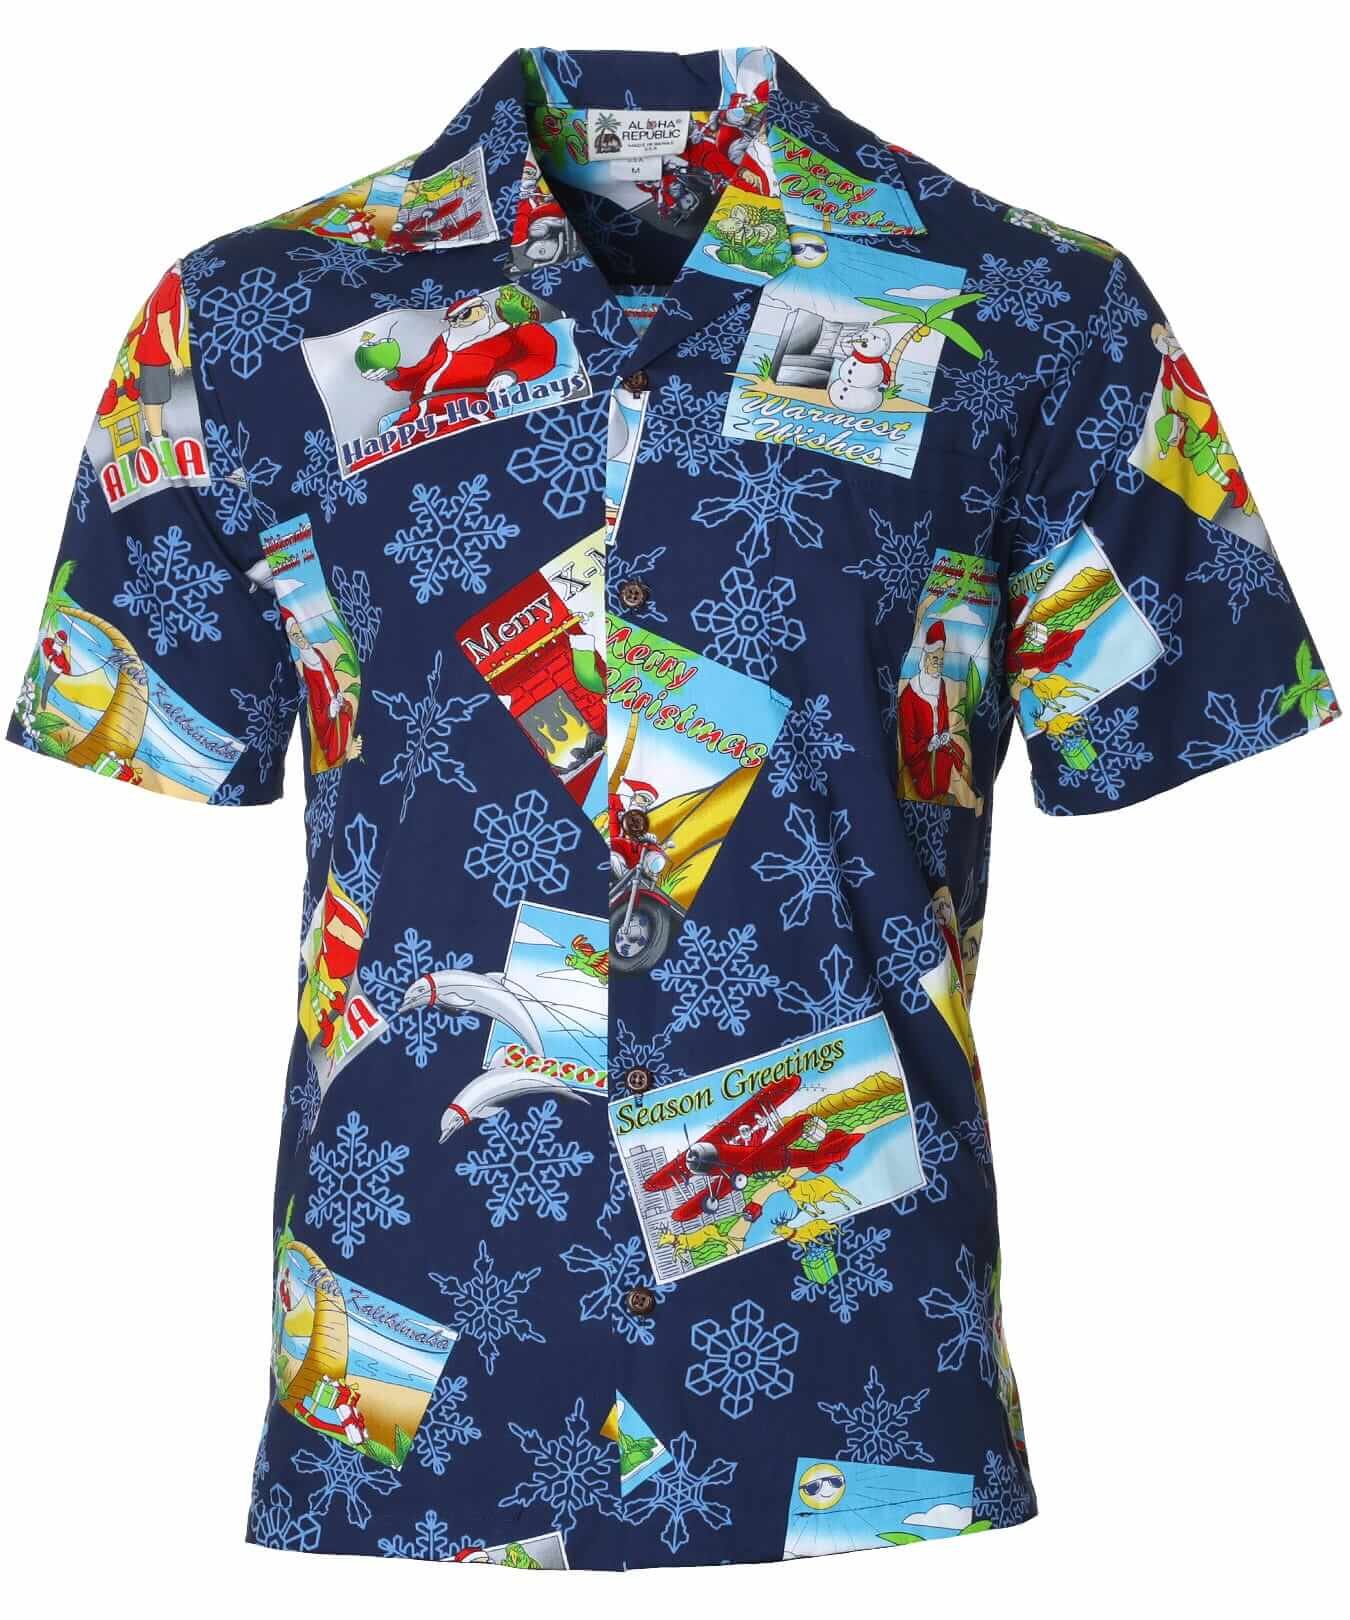 Mele Kalikimaka Cotton Aloha Christmas Shirt Navy